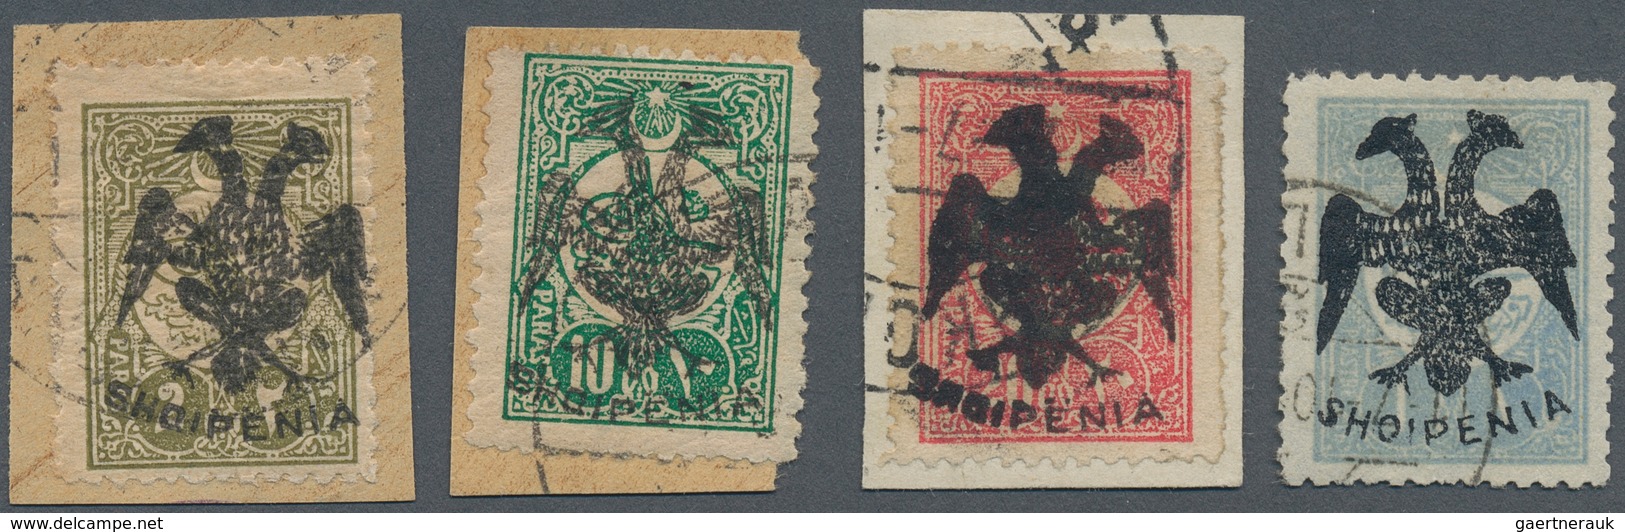 13314A Albanien: 1913, Doppeladler-Aufdruck "SHQIPENIA" Auf 2 Pa Oliv, 10 Pa Blaugrün, 20 Pa Rosa Und 1 Pia - Albanie